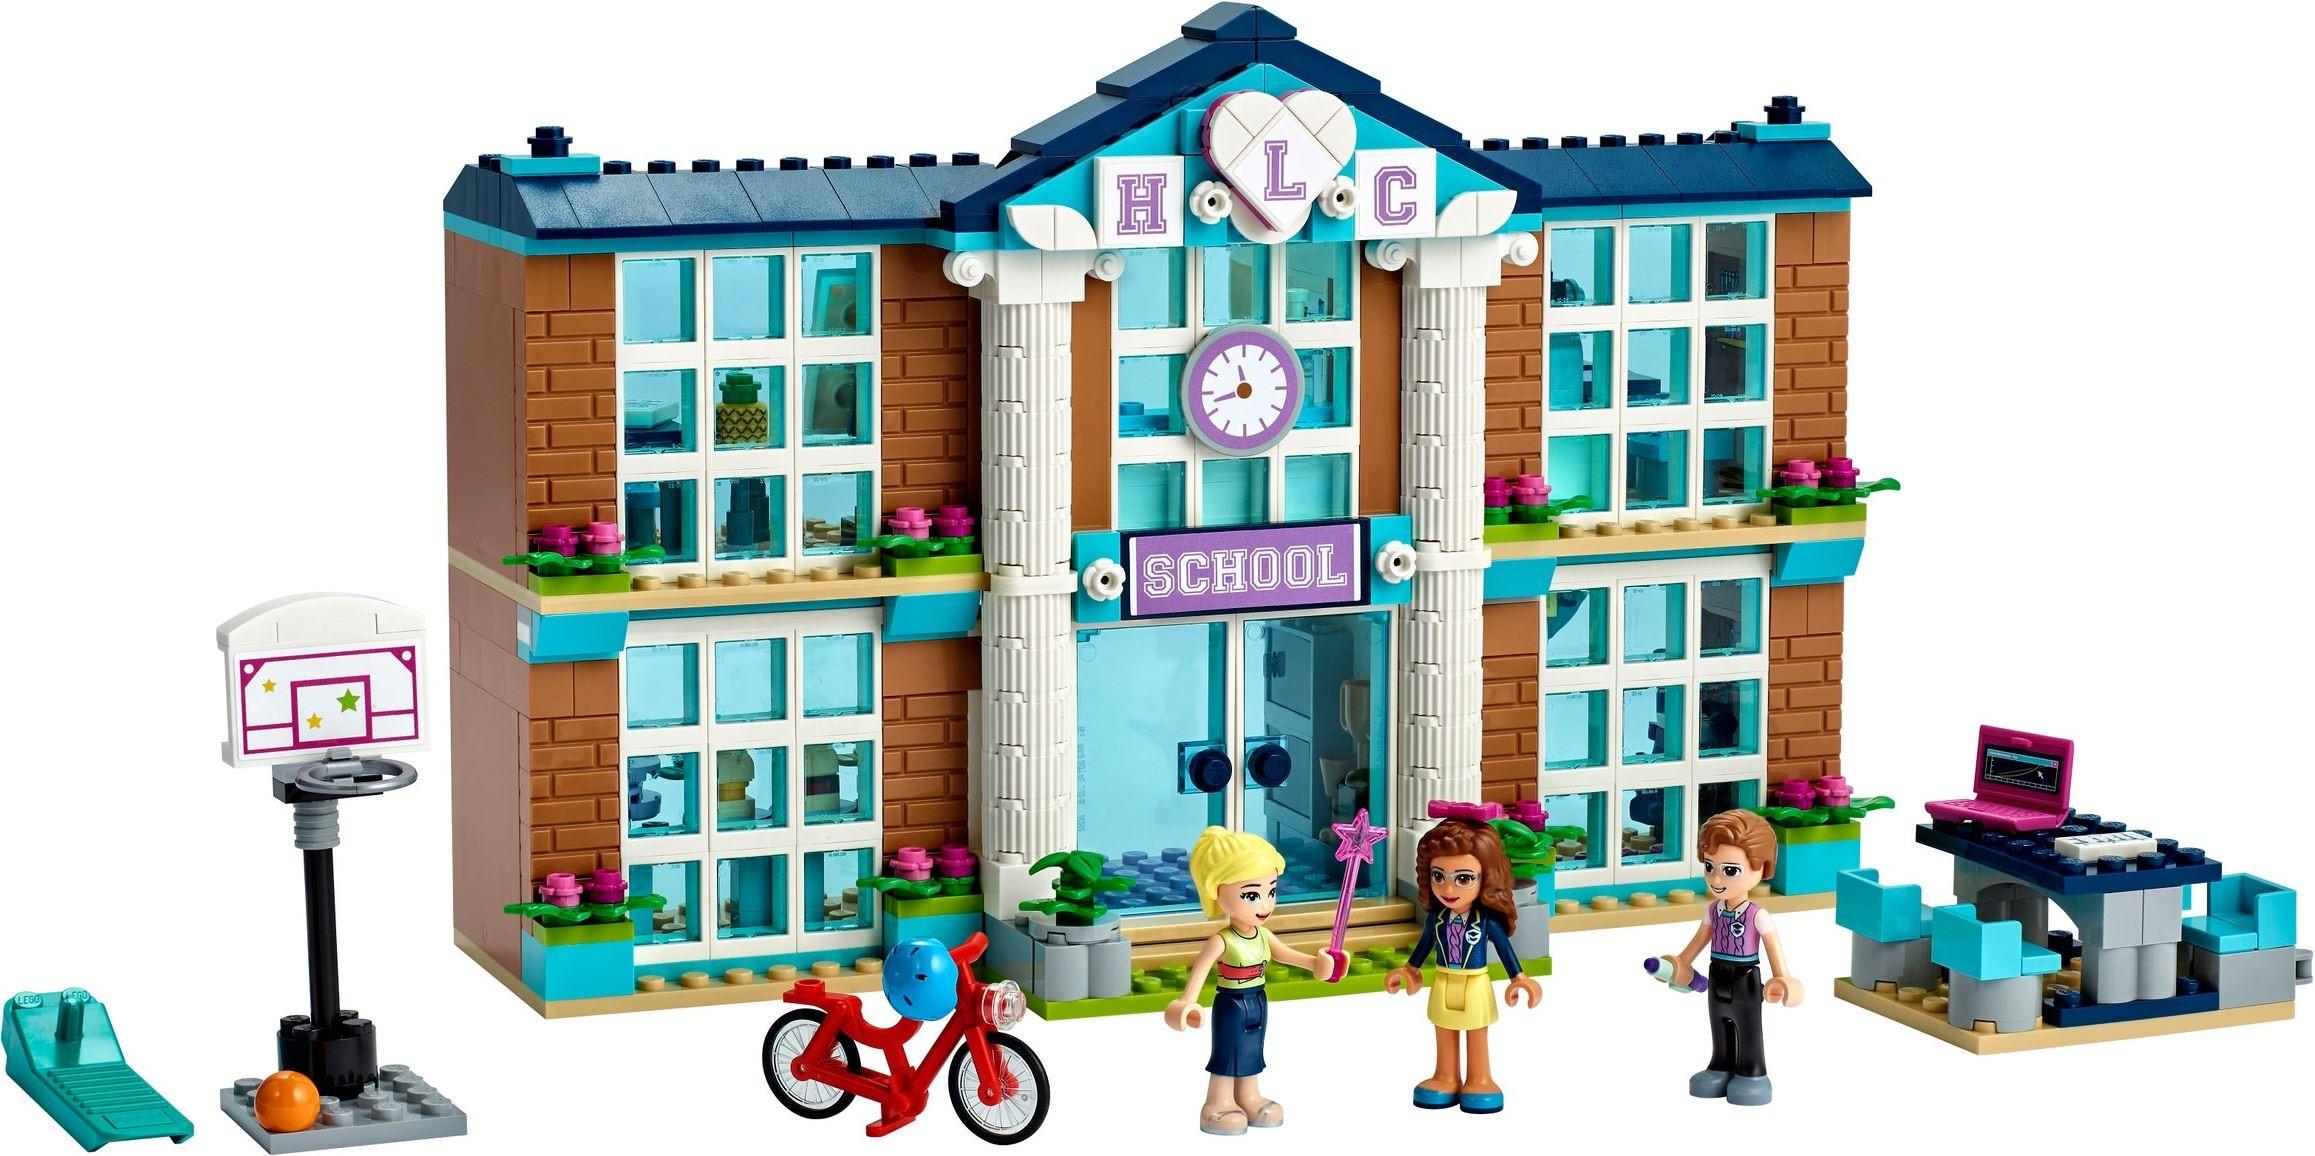 LEGO 41682 Friends Heartlake City School | BrickEconomy